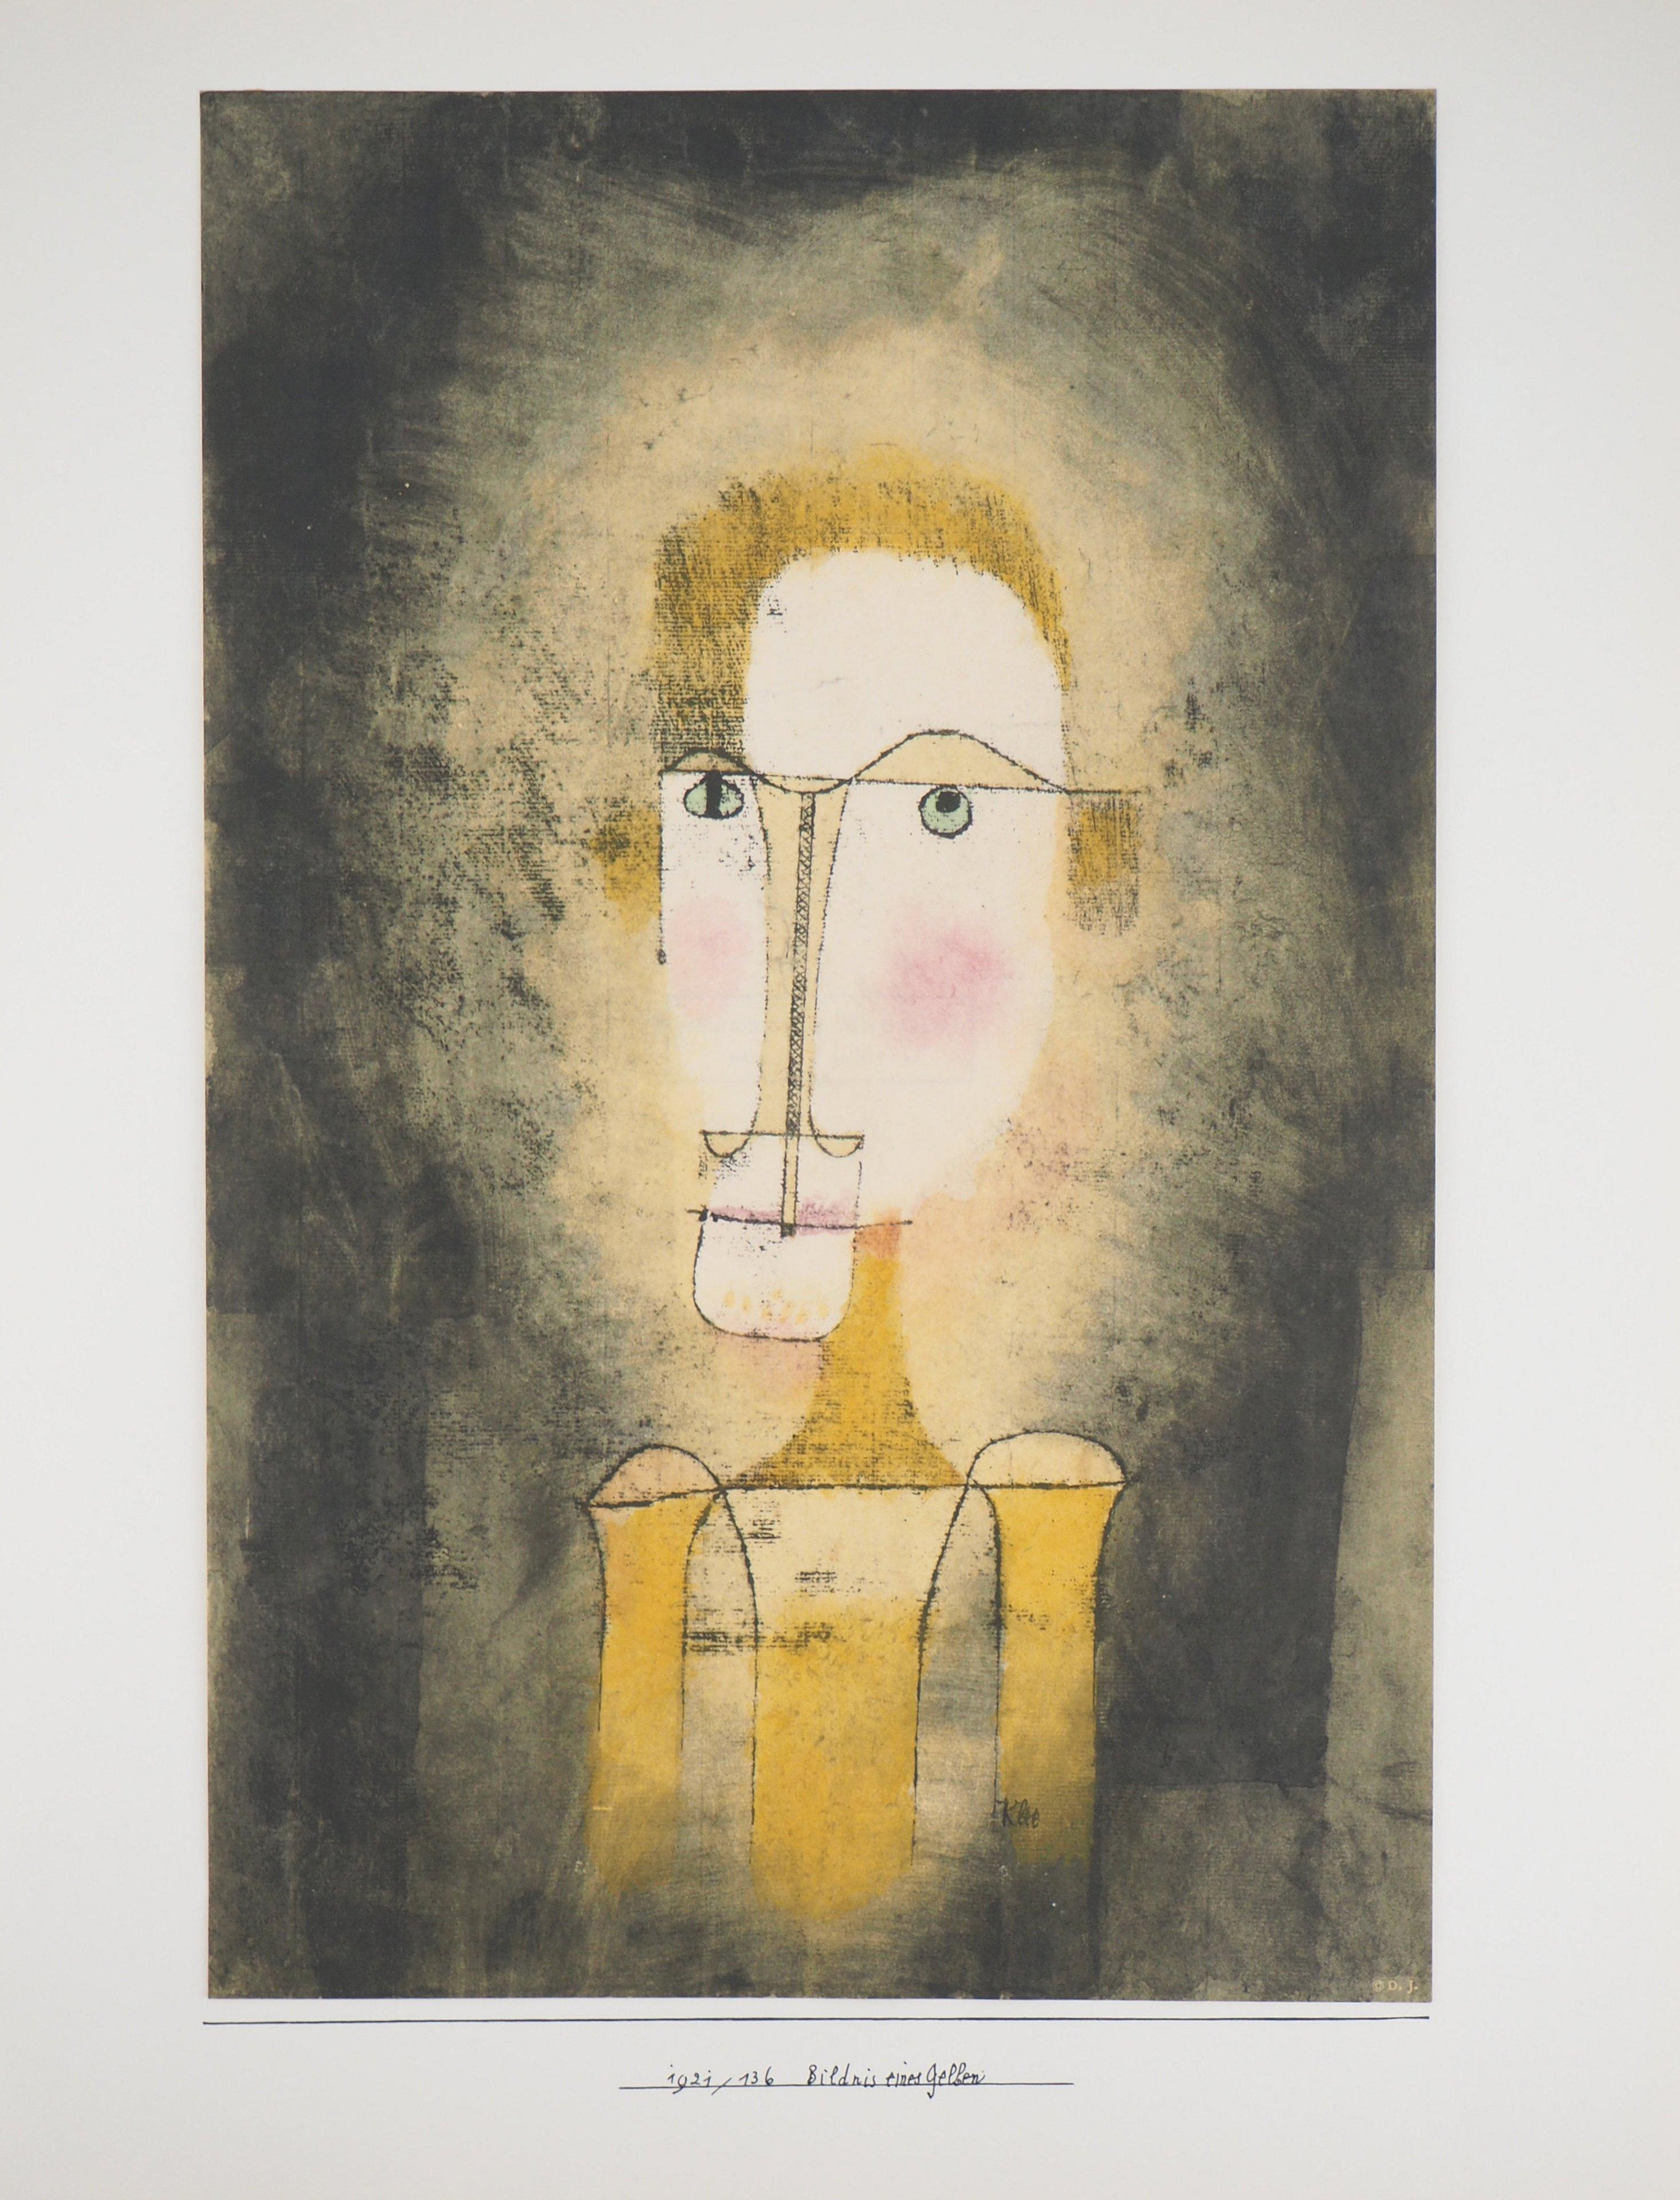 Paul KLEE (nach)
Porträt eines Gelben

Lithographie und Schablone (Jacomet-Verfahren), auf Cansonpapier
Gedruckte Unterschrift auf der Platte
50 x 38,2 cm (19,6 x 14,9 Zoll)

INFORMATION : Diese Lithographie wurde 1964 von der Galerie Berggruen in